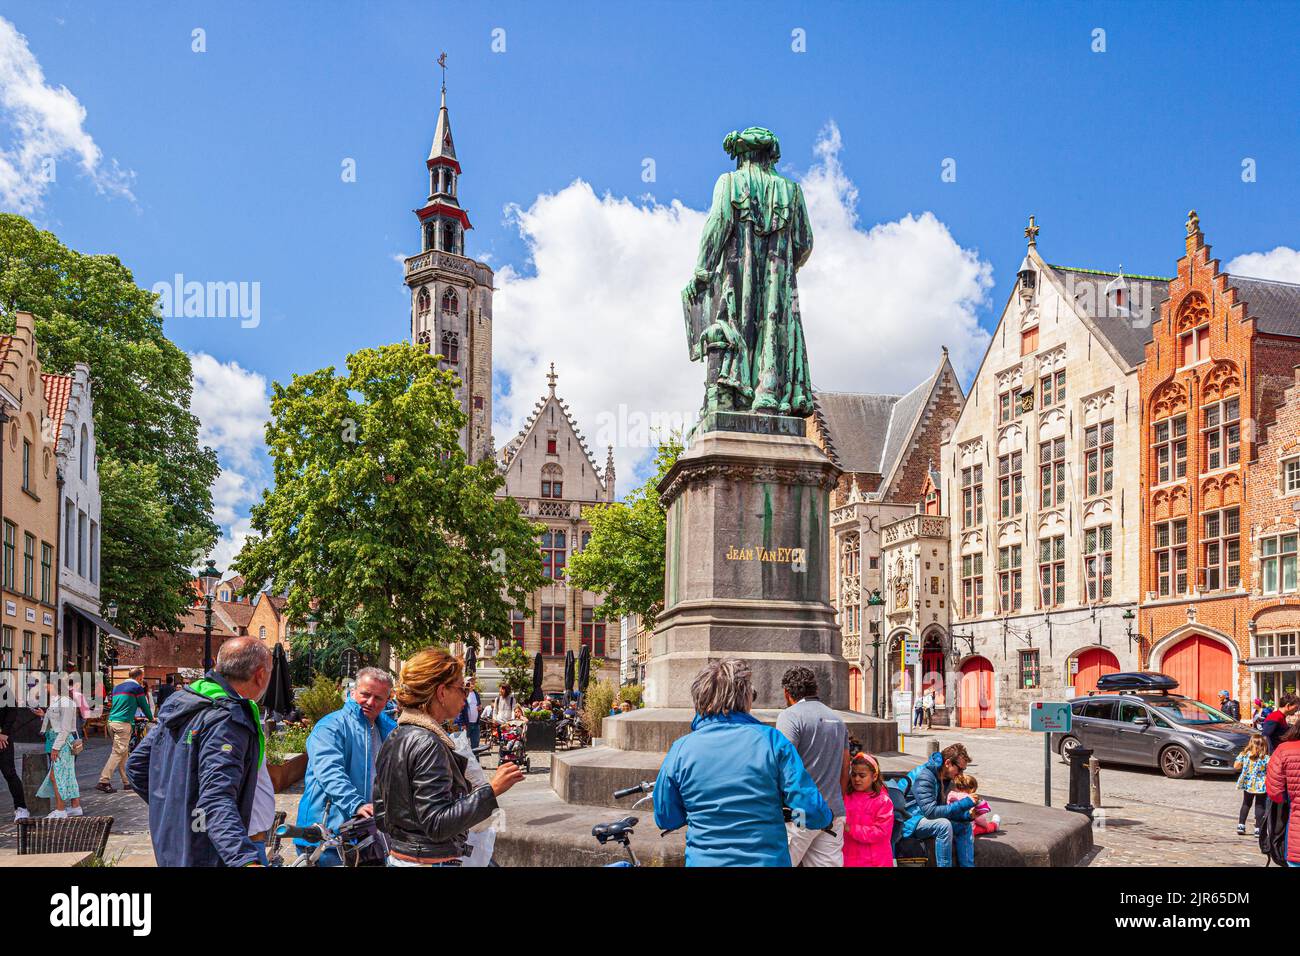 The statue commemorating Jean Van Eyck in Jan Van Eyckplein Square in Bruges, Belgium Stock Photo